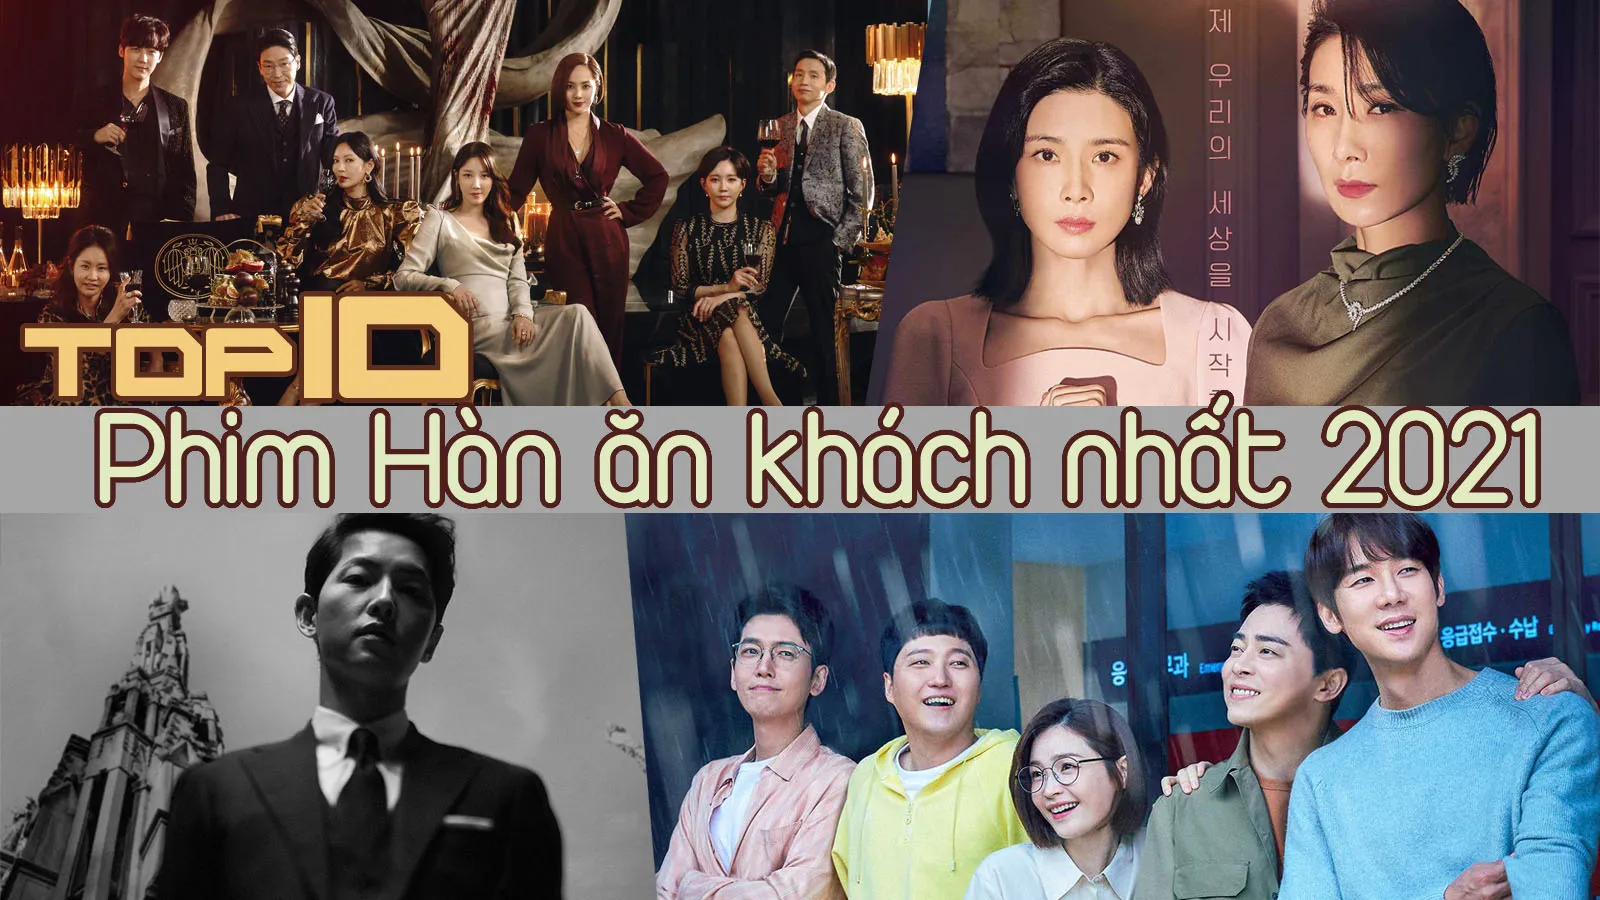 10 phim truyền hình Hàn Quốc ăn khách nhất năm 2021